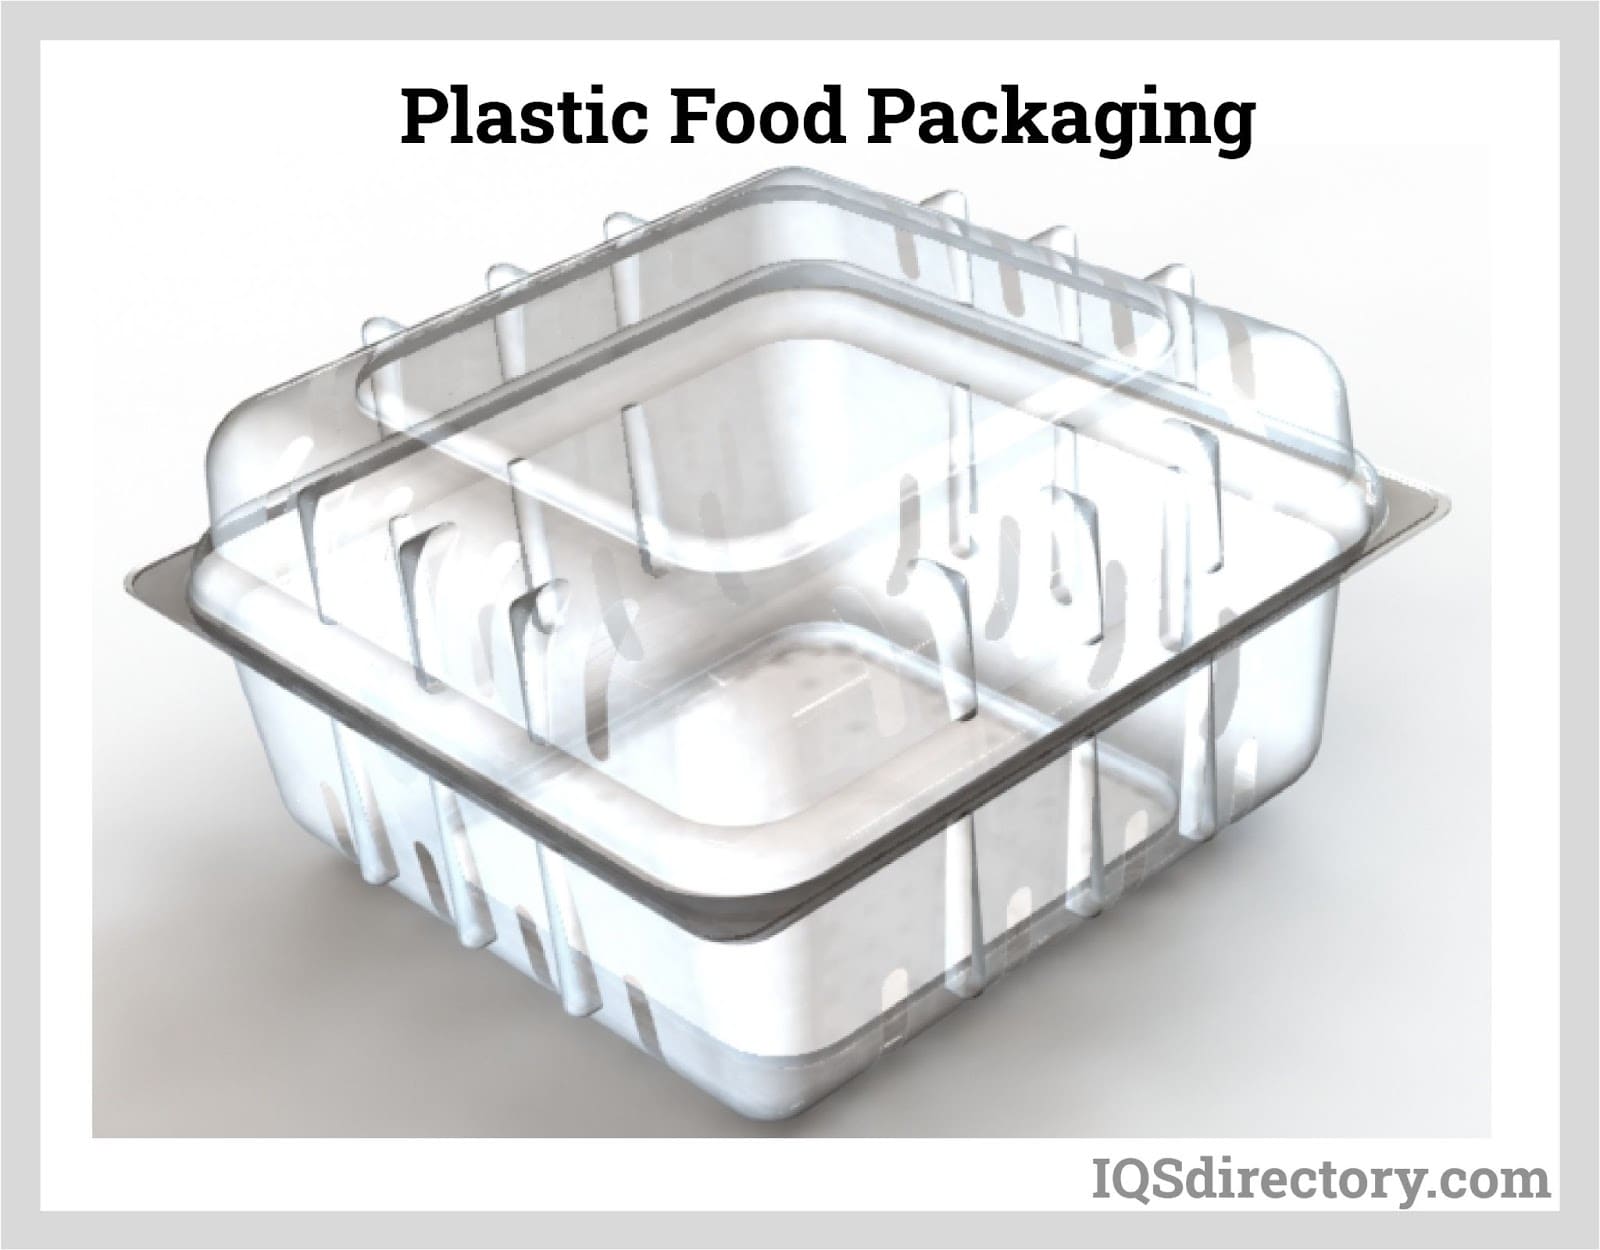 Plastic Food Packaging